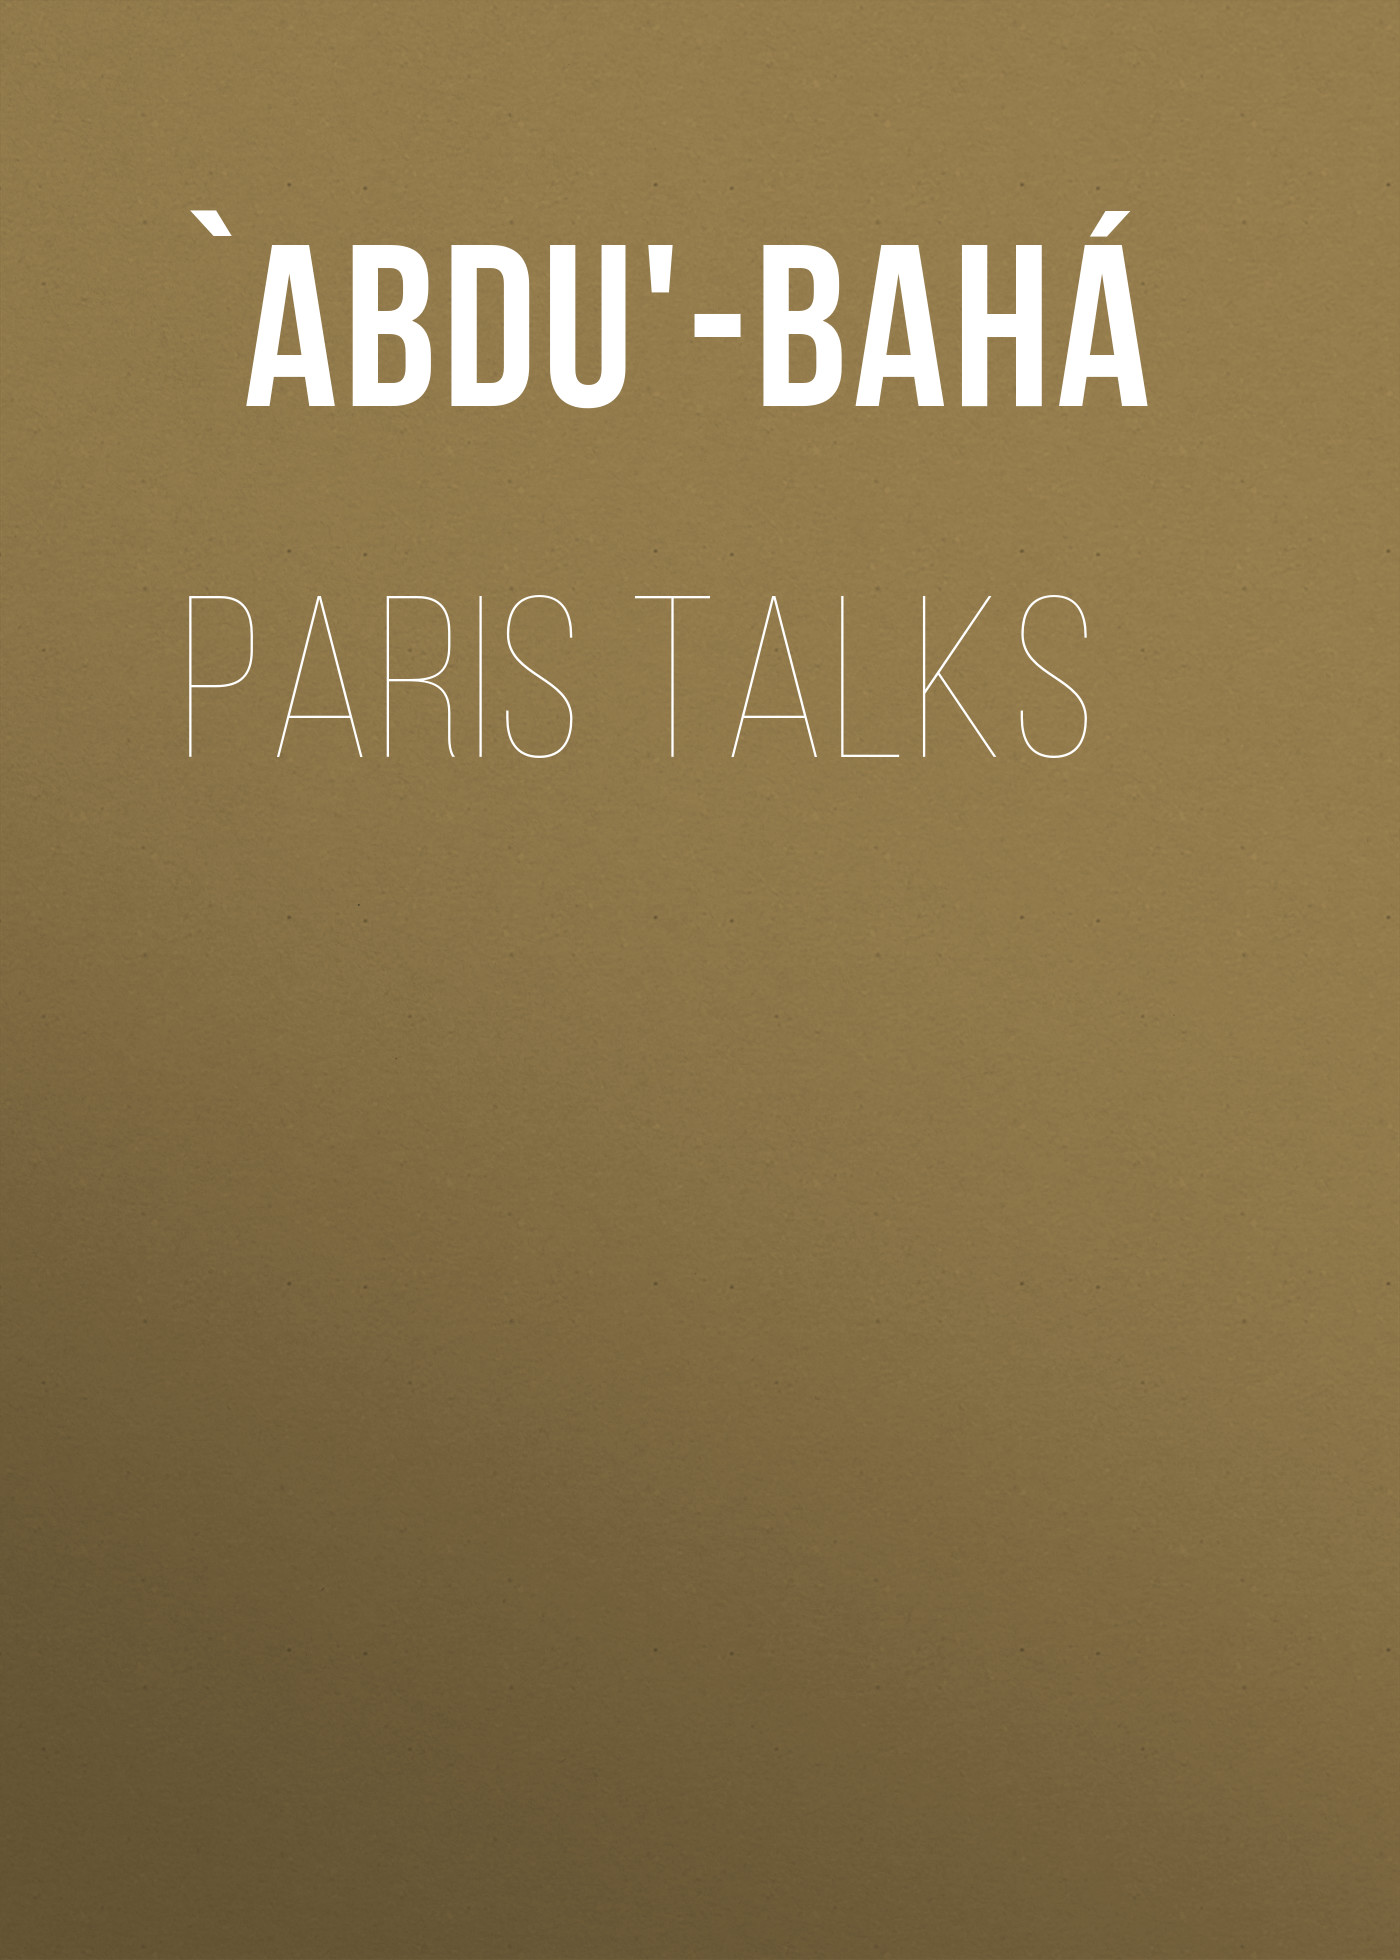 Книга Paris Talks из серии , созданная  `Abdu'-Bahá, может относится к жанру Зарубежная классика, Зарубежная эзотерическая и религиозная литература, Философия, Городское фэнтези, Зарубежная психология. Стоимость электронной книги Paris Talks с идентификатором 36367422 составляет 0 руб.